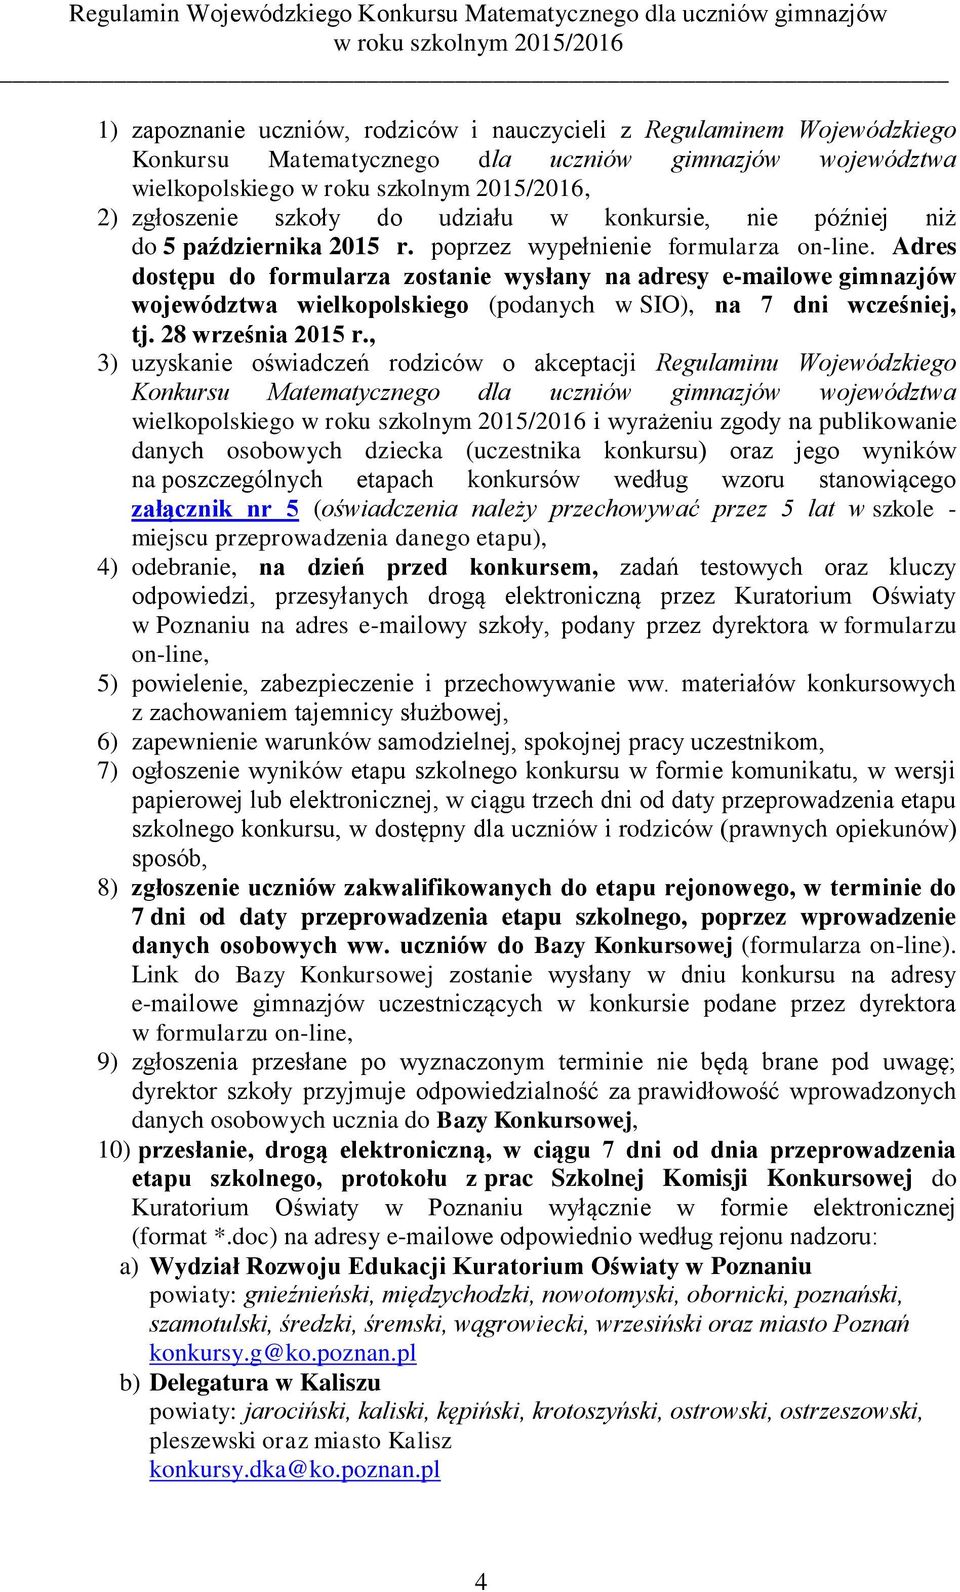 Adres dostępu do formularza zostanie wysłany na adresy e-mailowe gimnazjów województwa wielkopolskiego (podanych w SIO), na 7 dni wcześniej, tj. 28 września 2015 r.